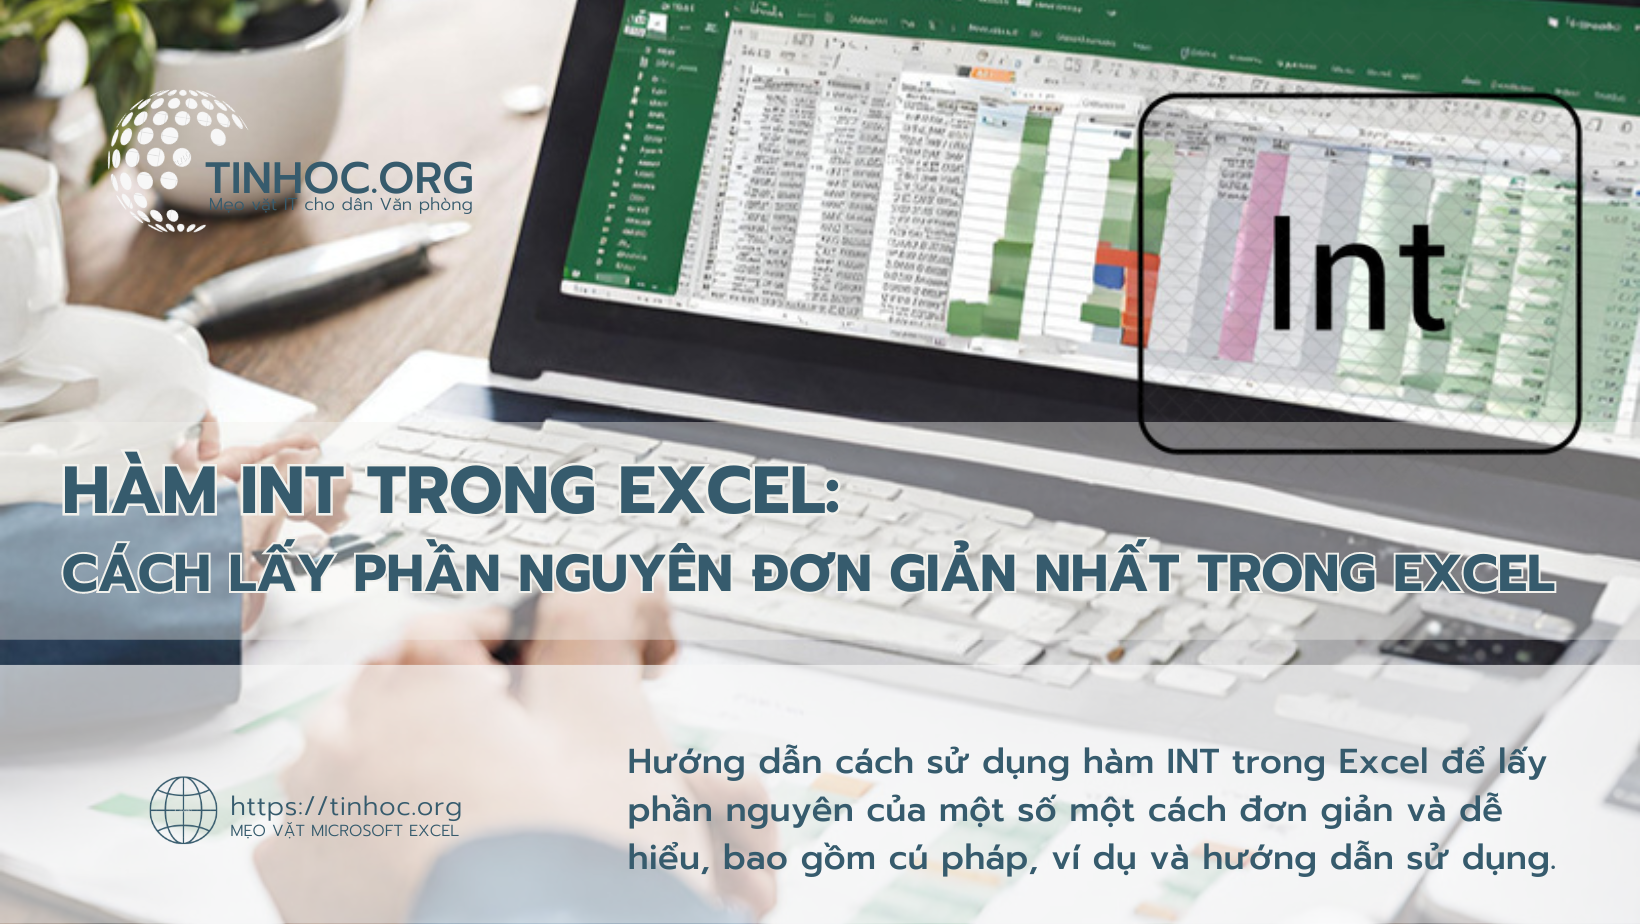 Hàm INT trong Excel: Cách lấy phần nguyên đơn giản nhất